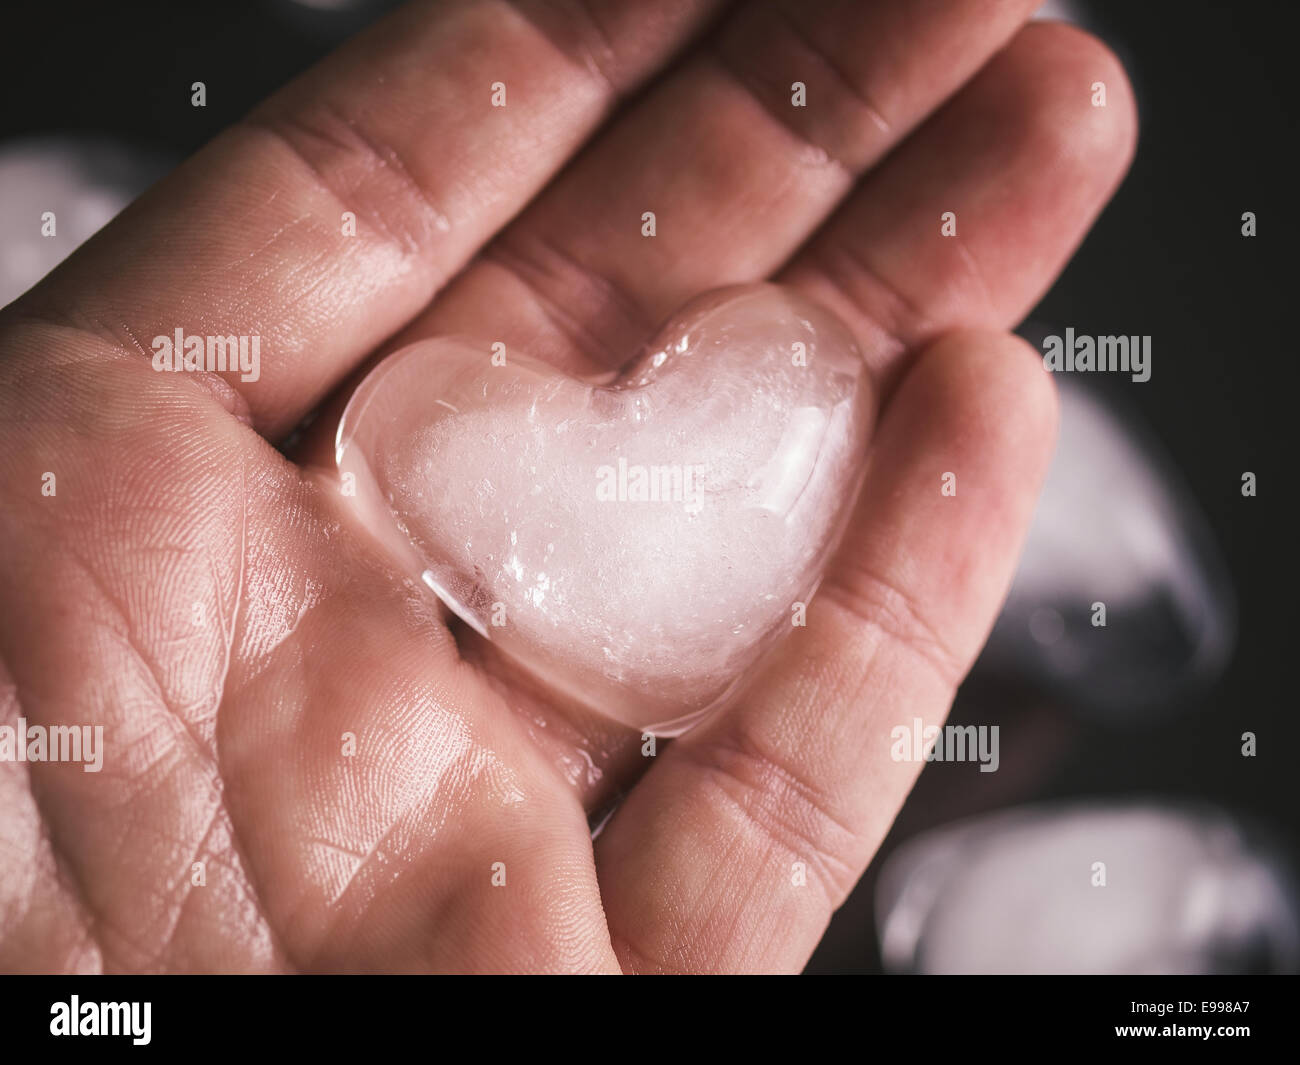 Cuore di ghiaccio in una mano in una extreme close up foto. Foto Stock